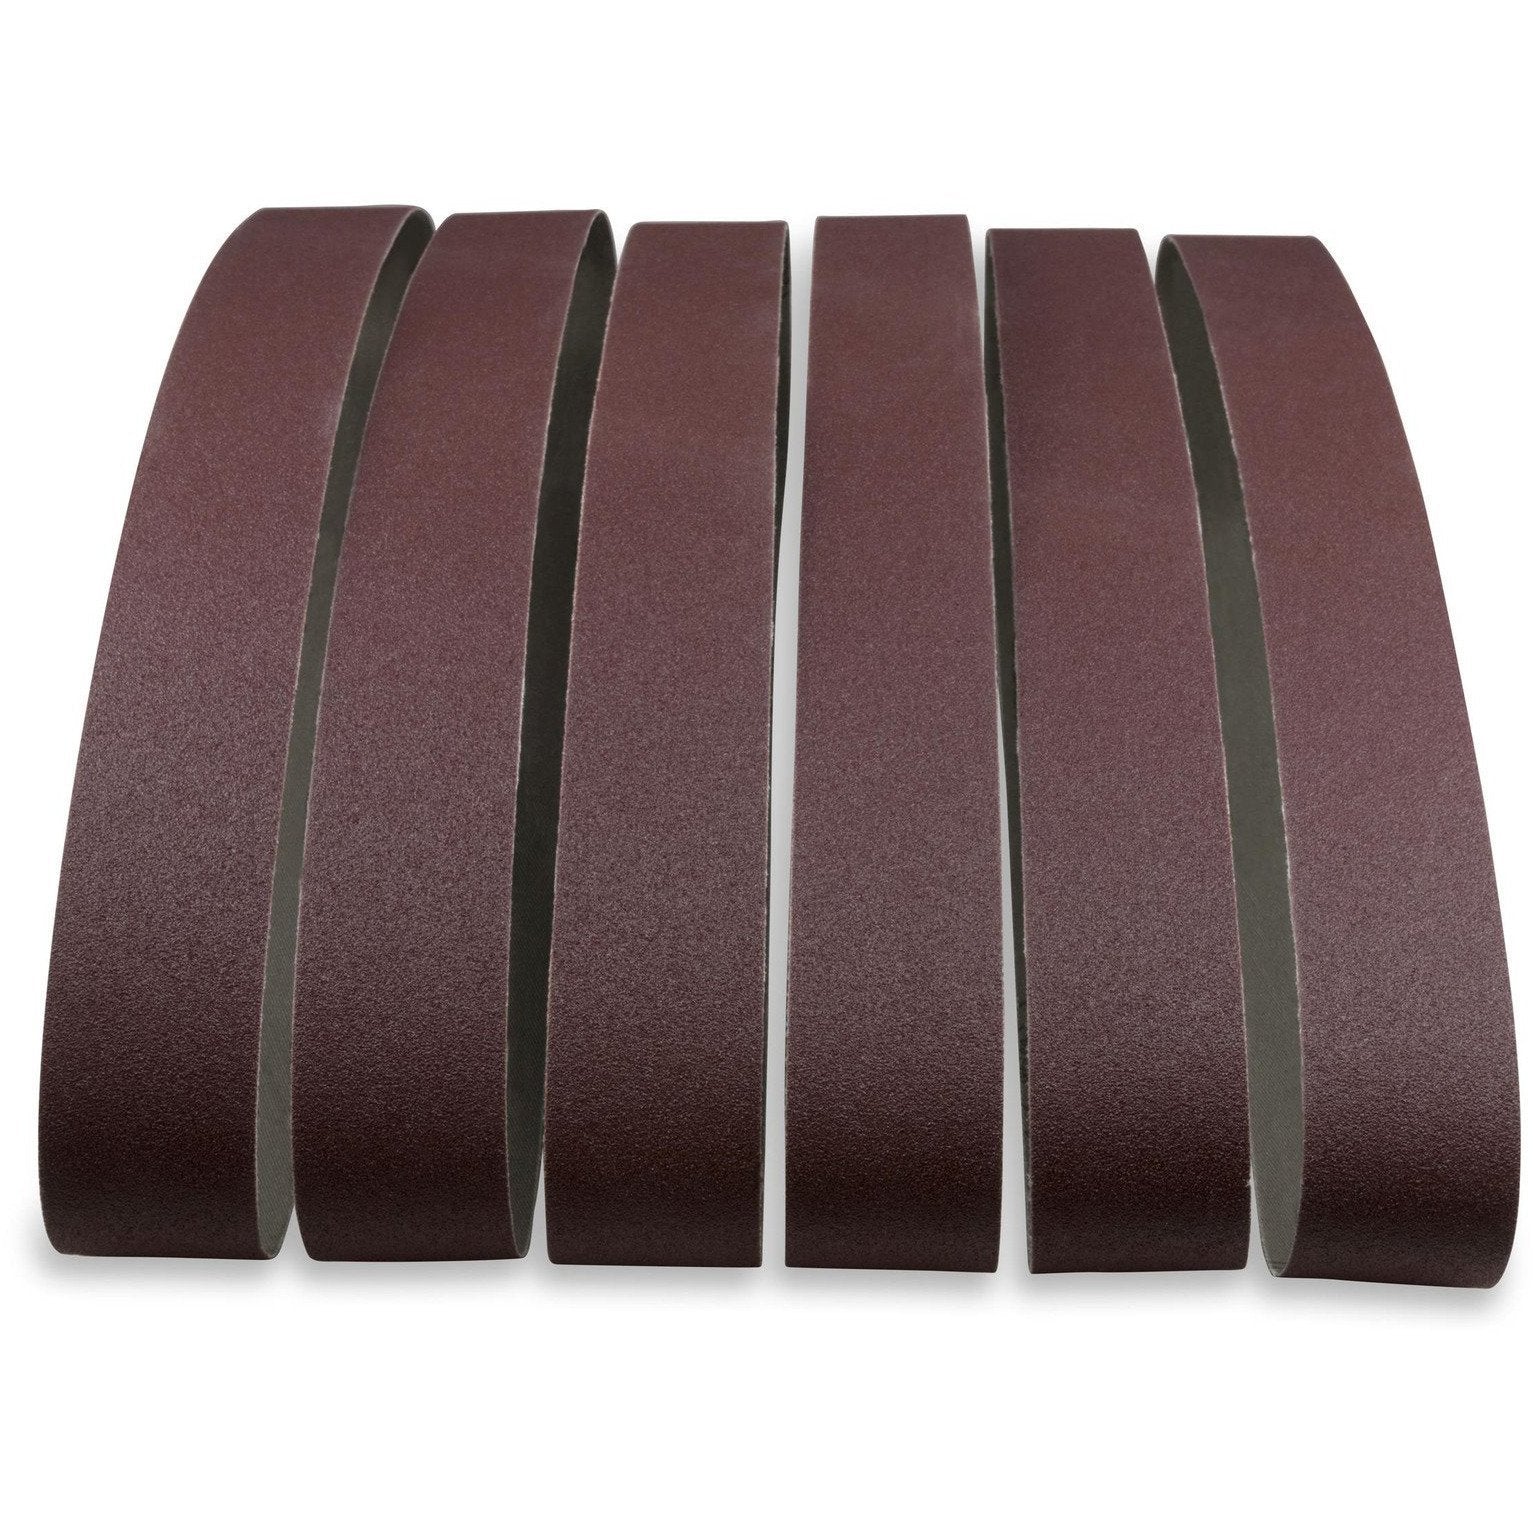 1 X 30 Inch Aluminum Oxide Sanding Belts, 12 Pack - Red Label Abrasives